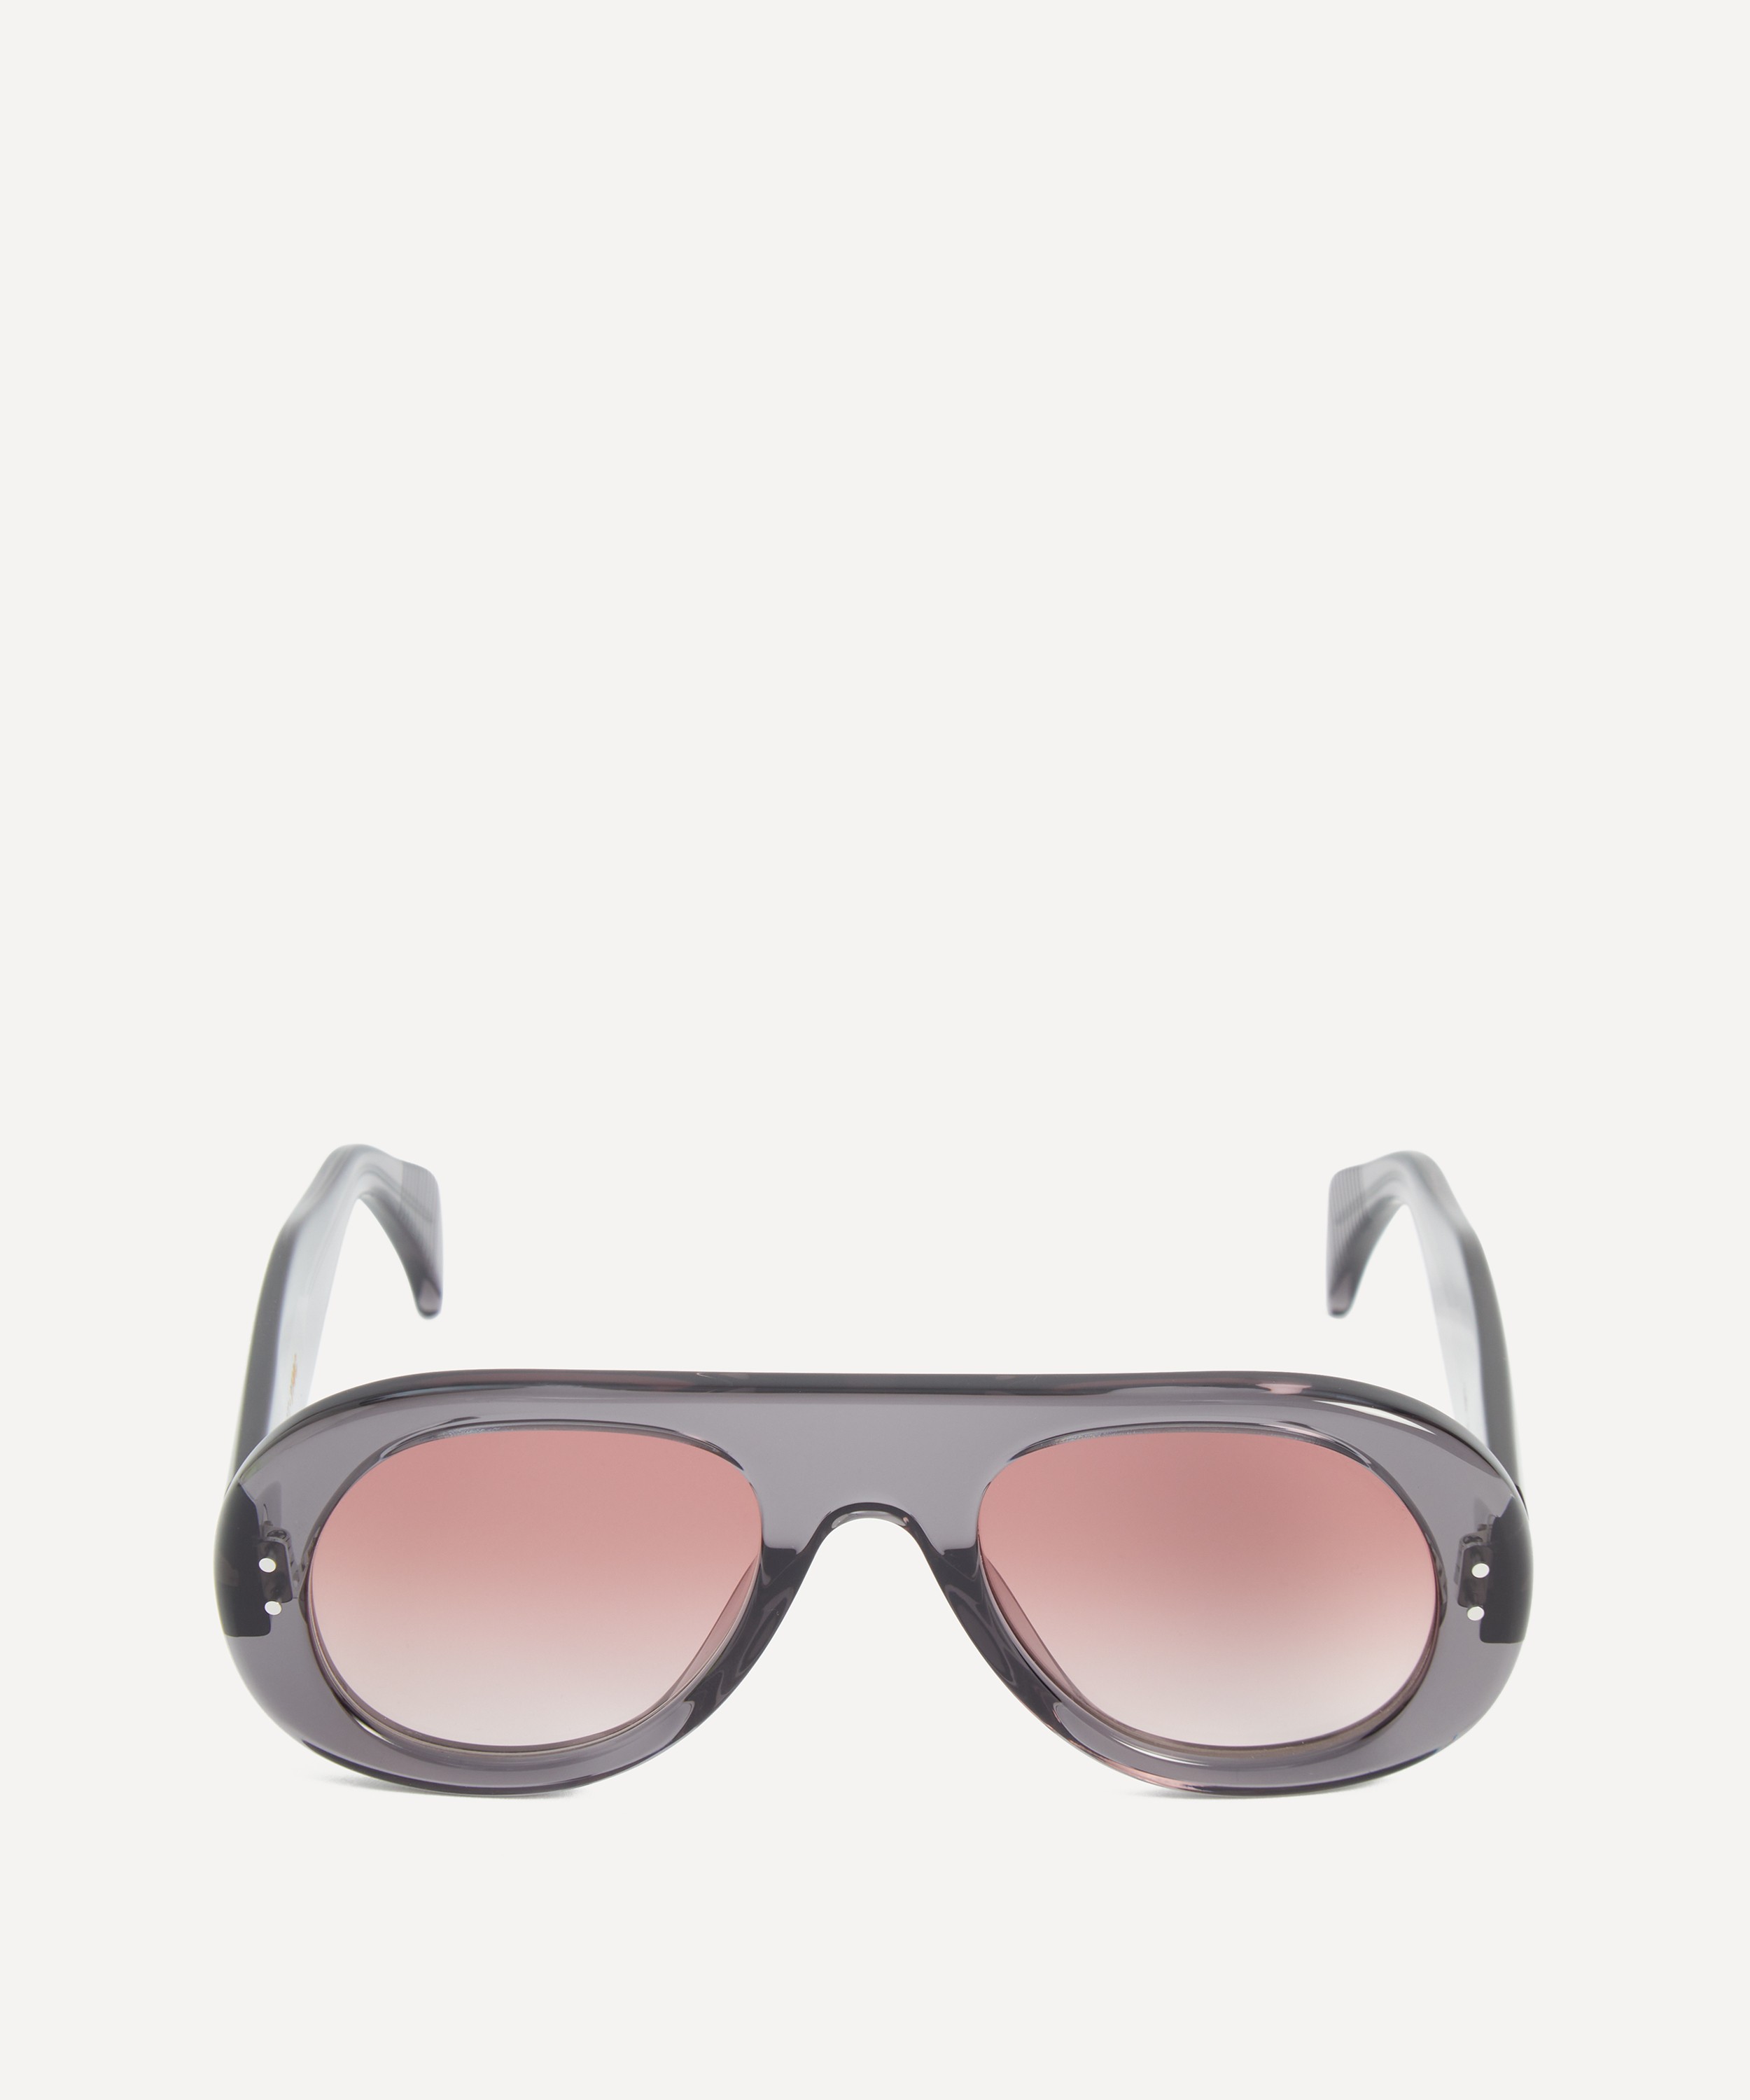 YMC - Tomba Aviator Sunglasses